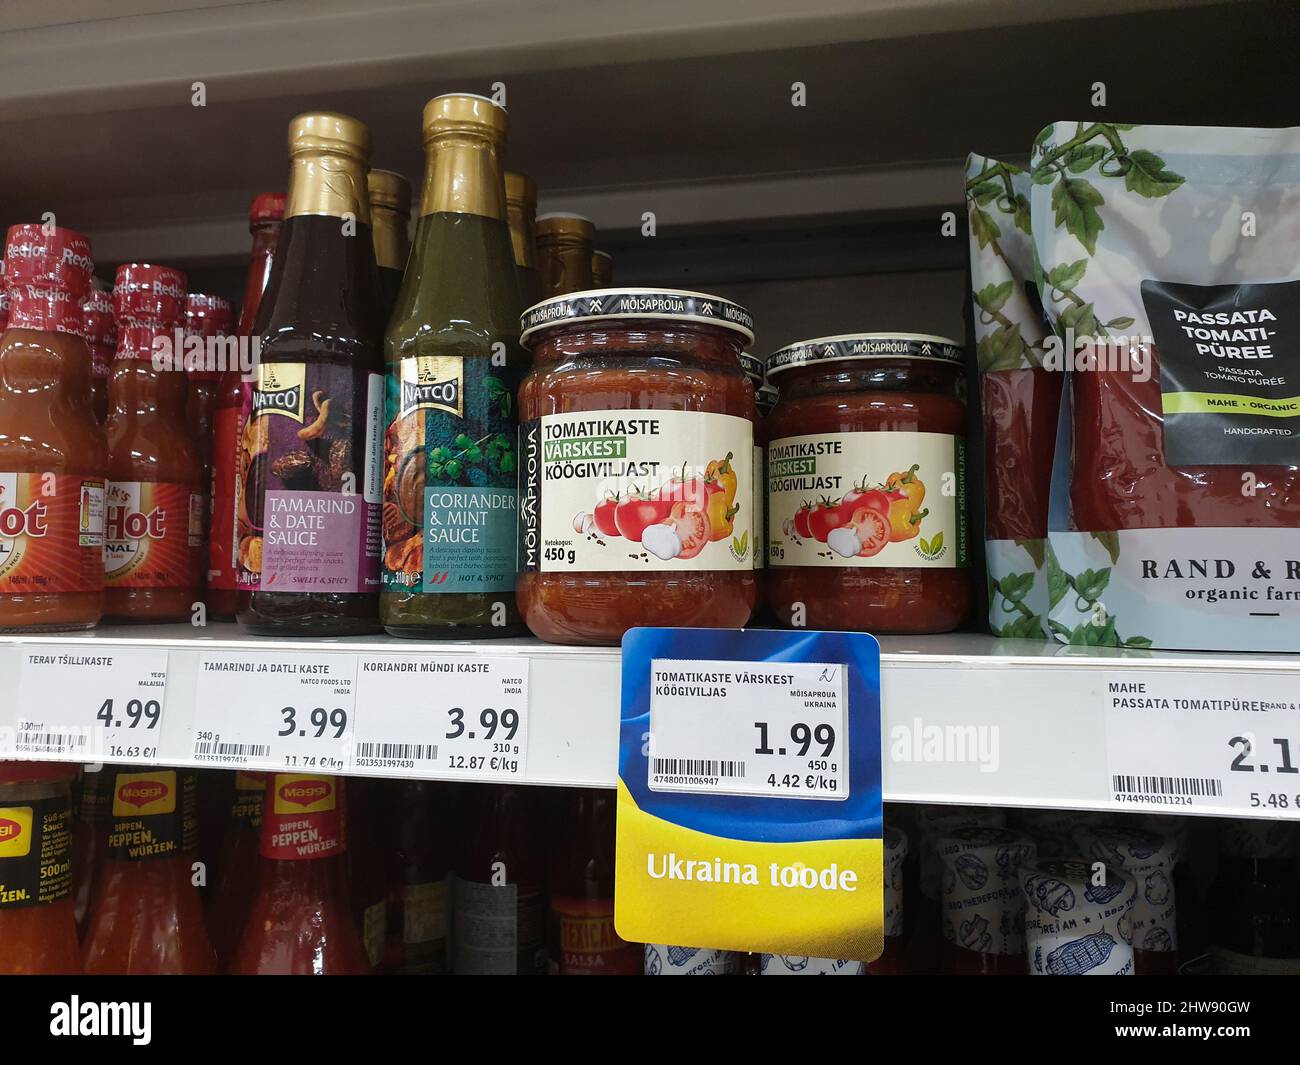 Ukrainische Produkte mit speziellen Tag im Supermarkt gekennzeichnet. Beschriftung auf dem Etikett in englischer Sprache 'Product of Ukraine'. Die Ukraine exportiert Produkte. Stockfoto